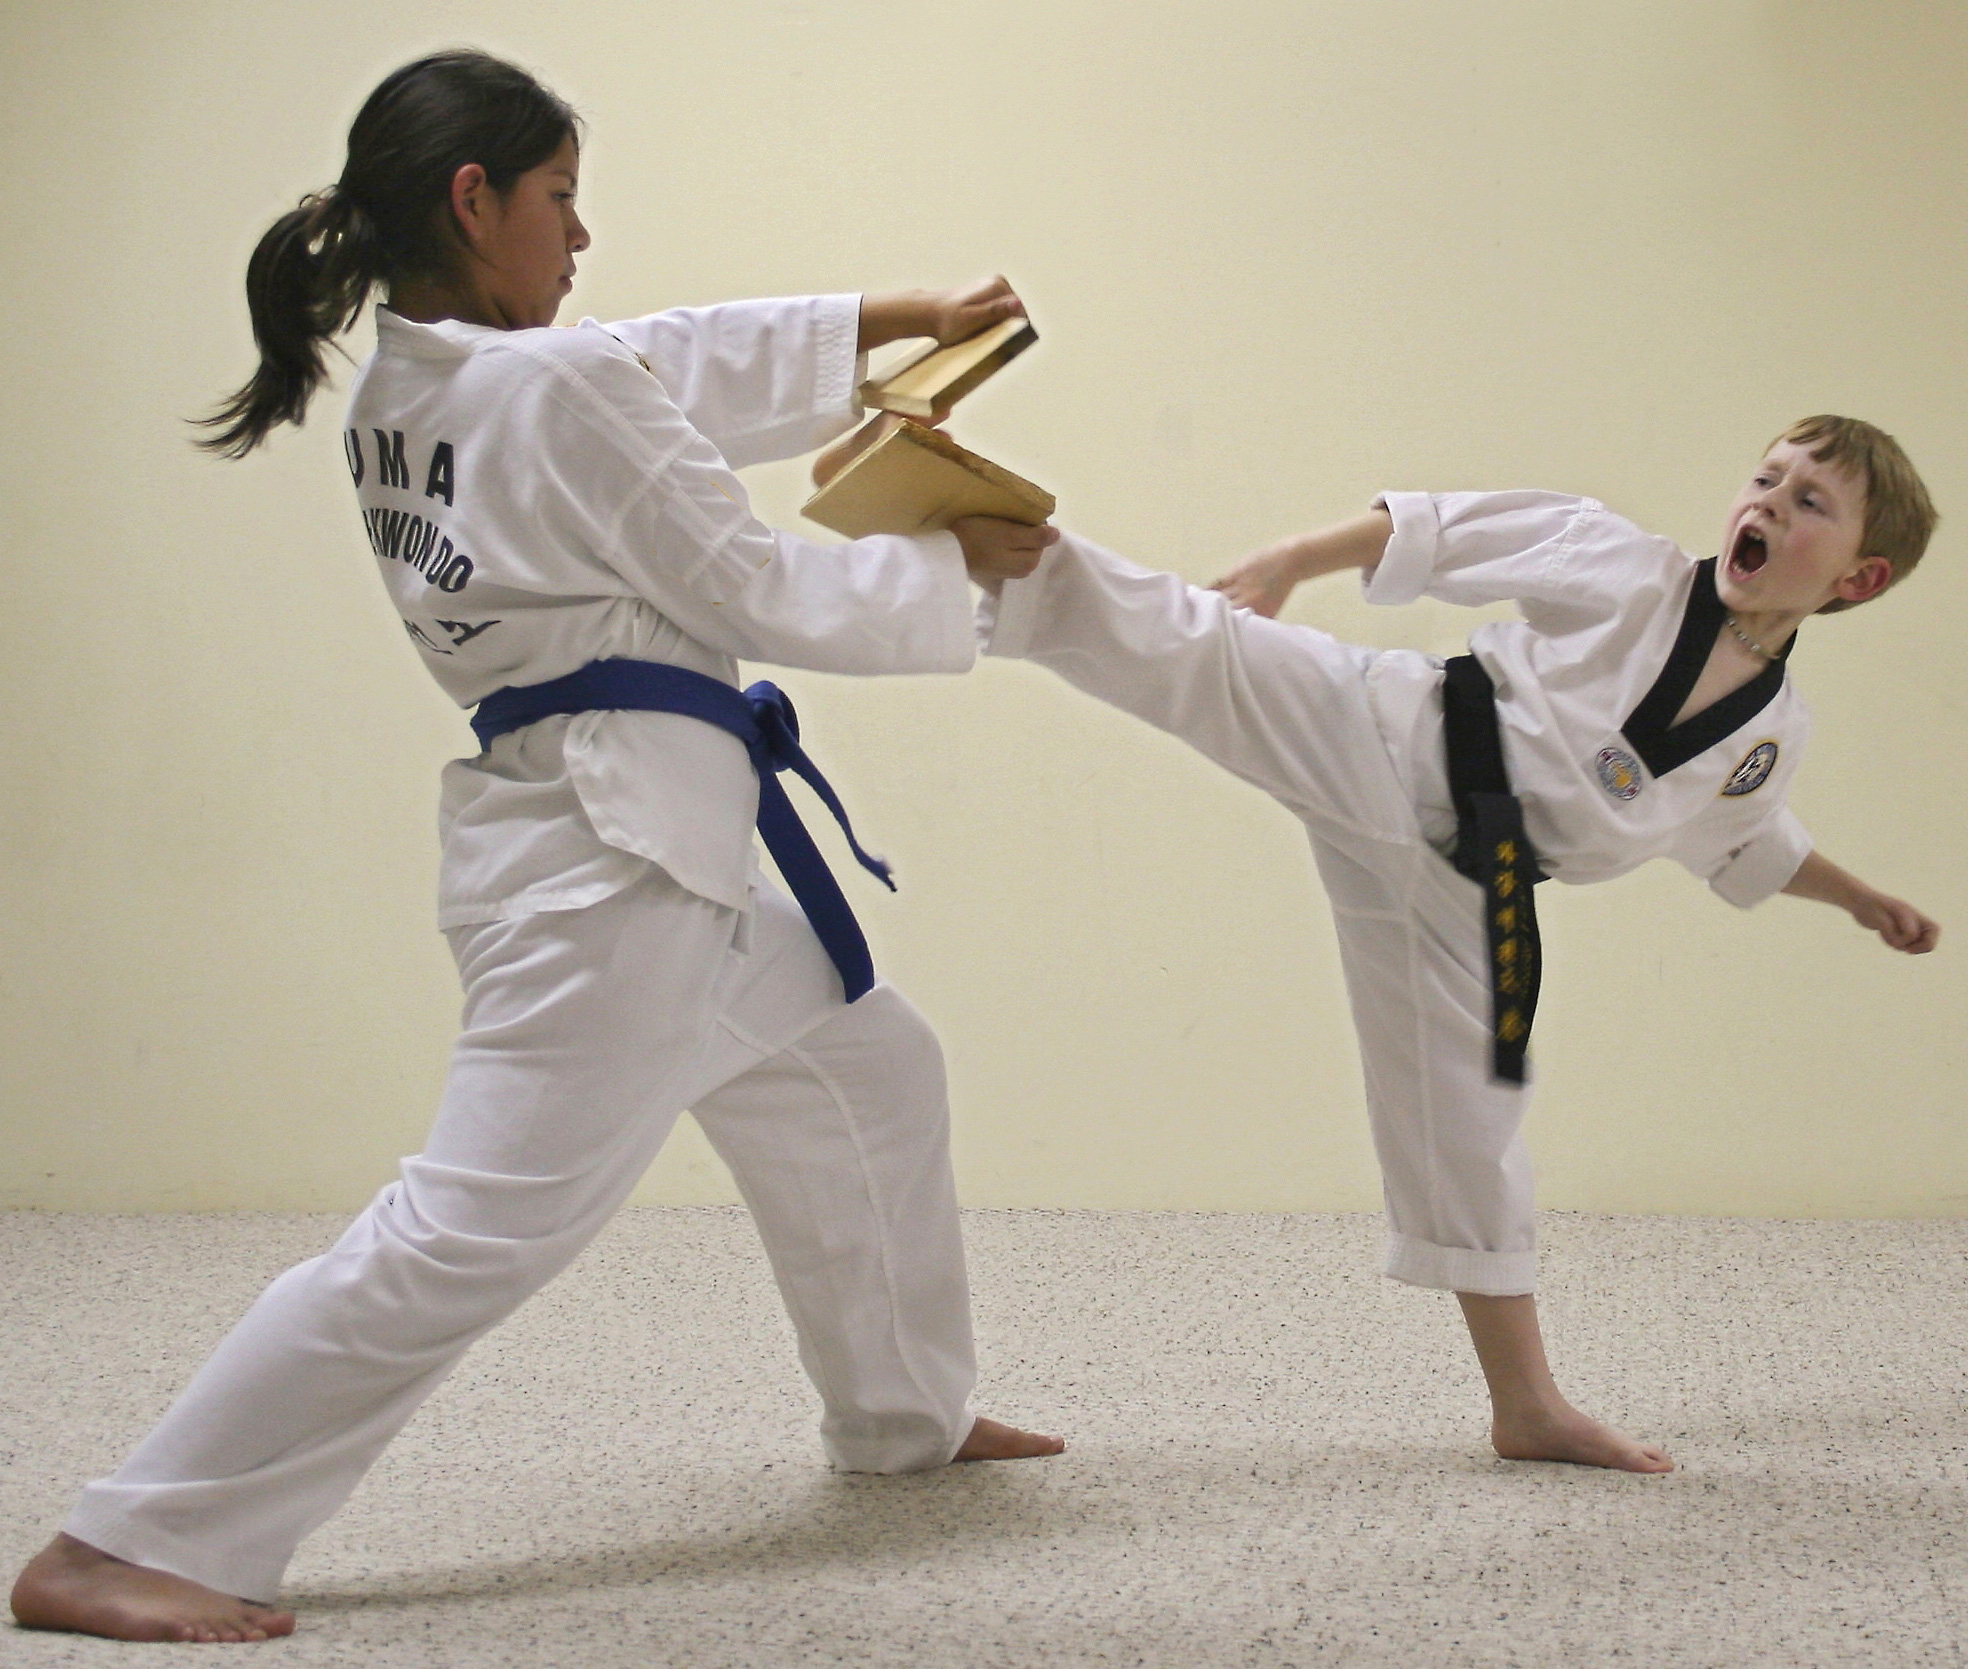 Taekwondo дети. Боевое искусство тхэквондо ИТФ. Занятия карате. Восточные единоборства для детей. Тхэквондо видео дети